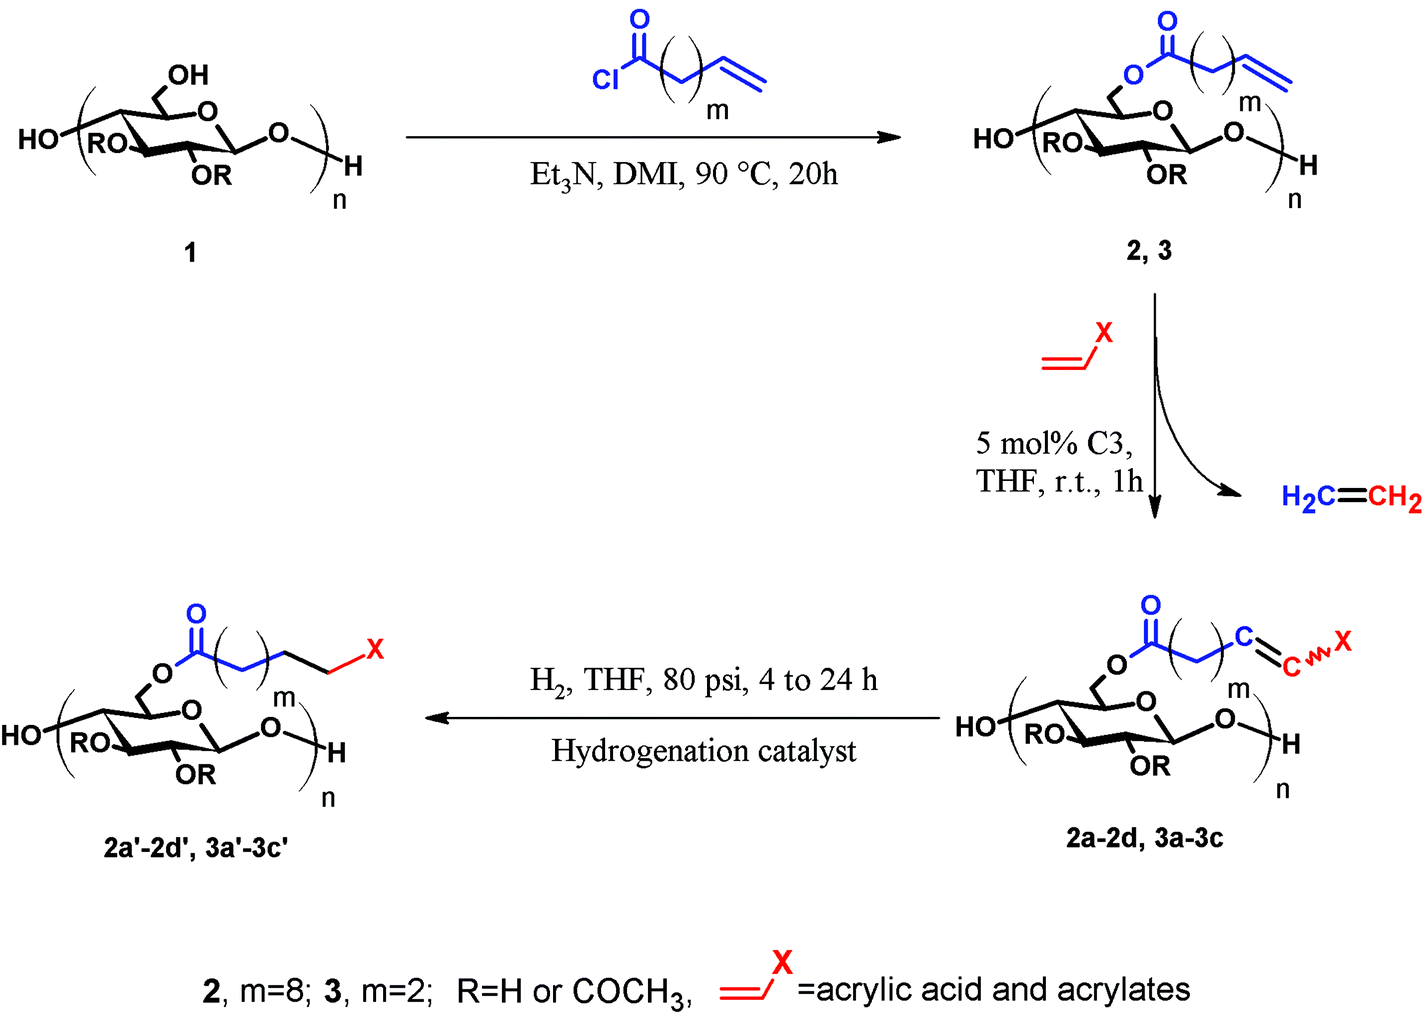 Ruthenium olefin metathesis